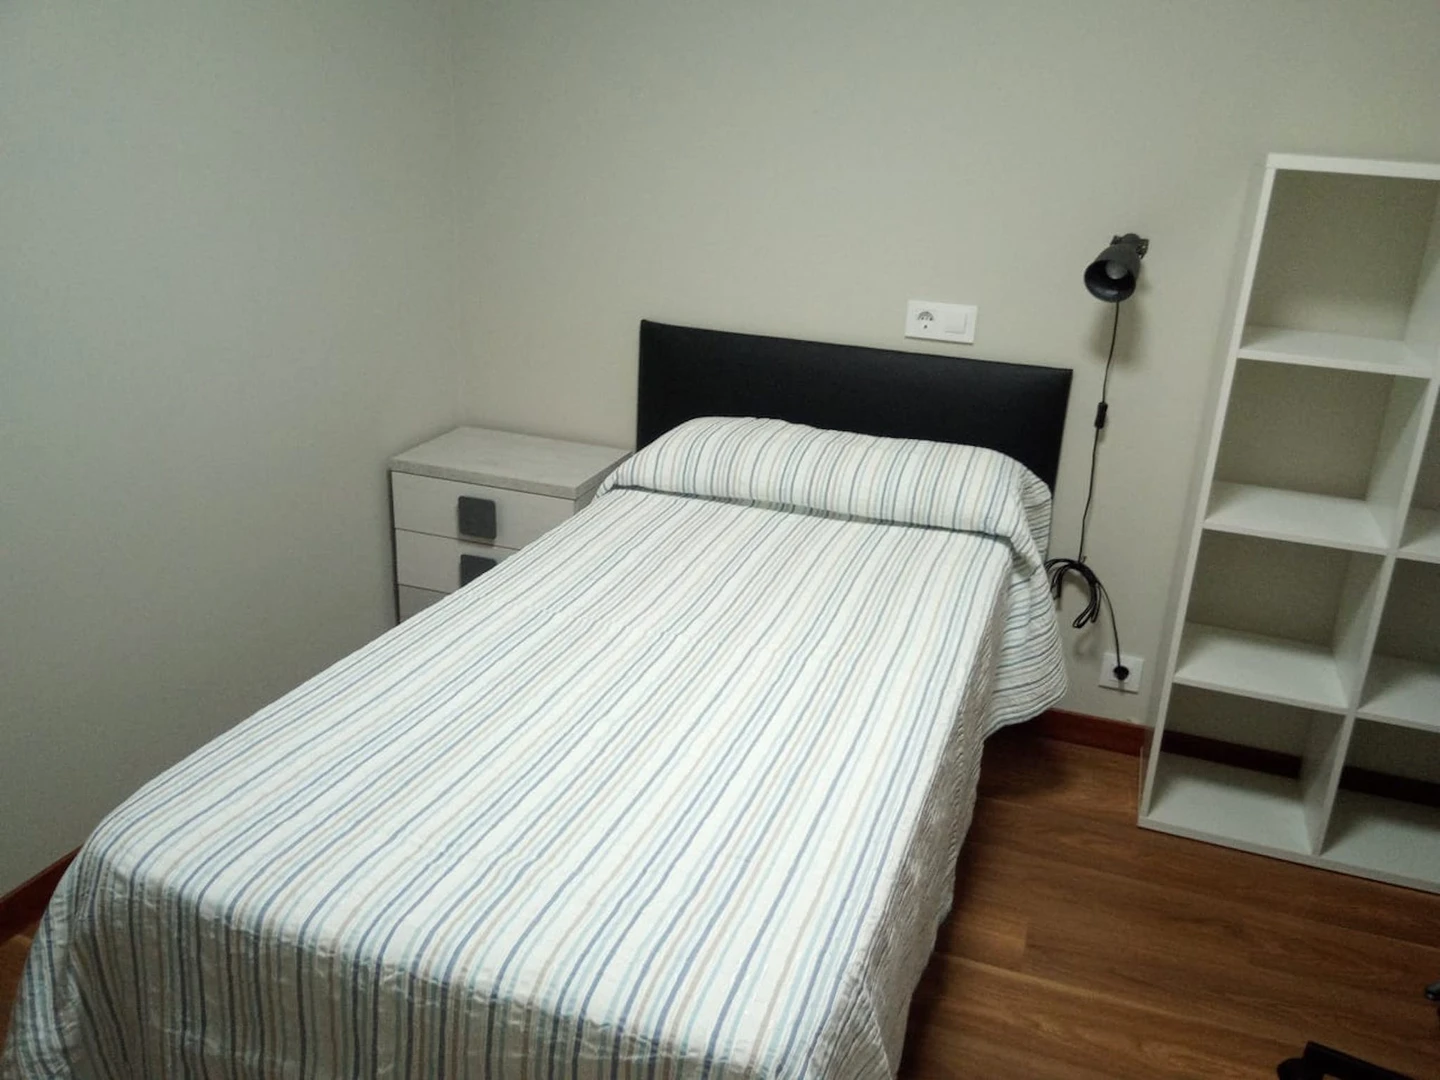 Cheap private room in Vigo